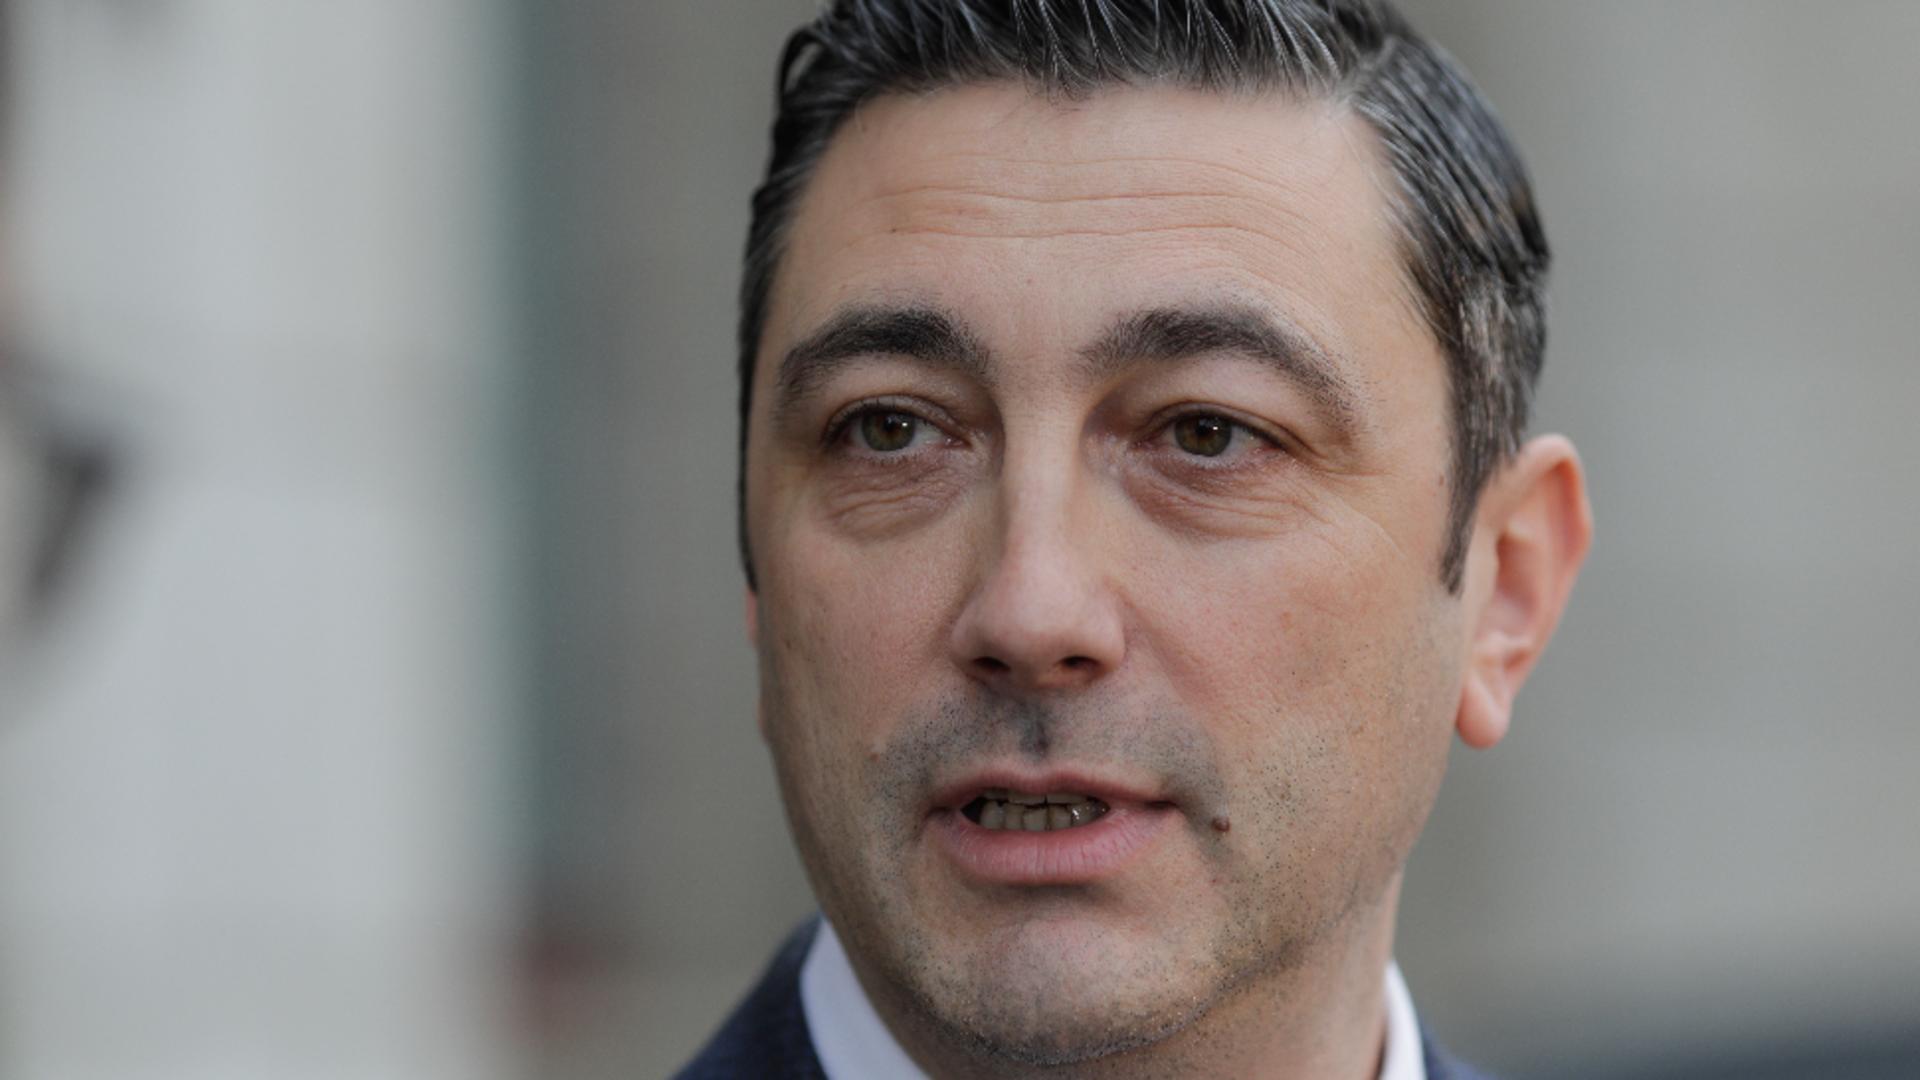 Procurorul general, Alex Florența, consideră prea mare pragul de 1 milion de euro pentru dezincriminarea evaziunii